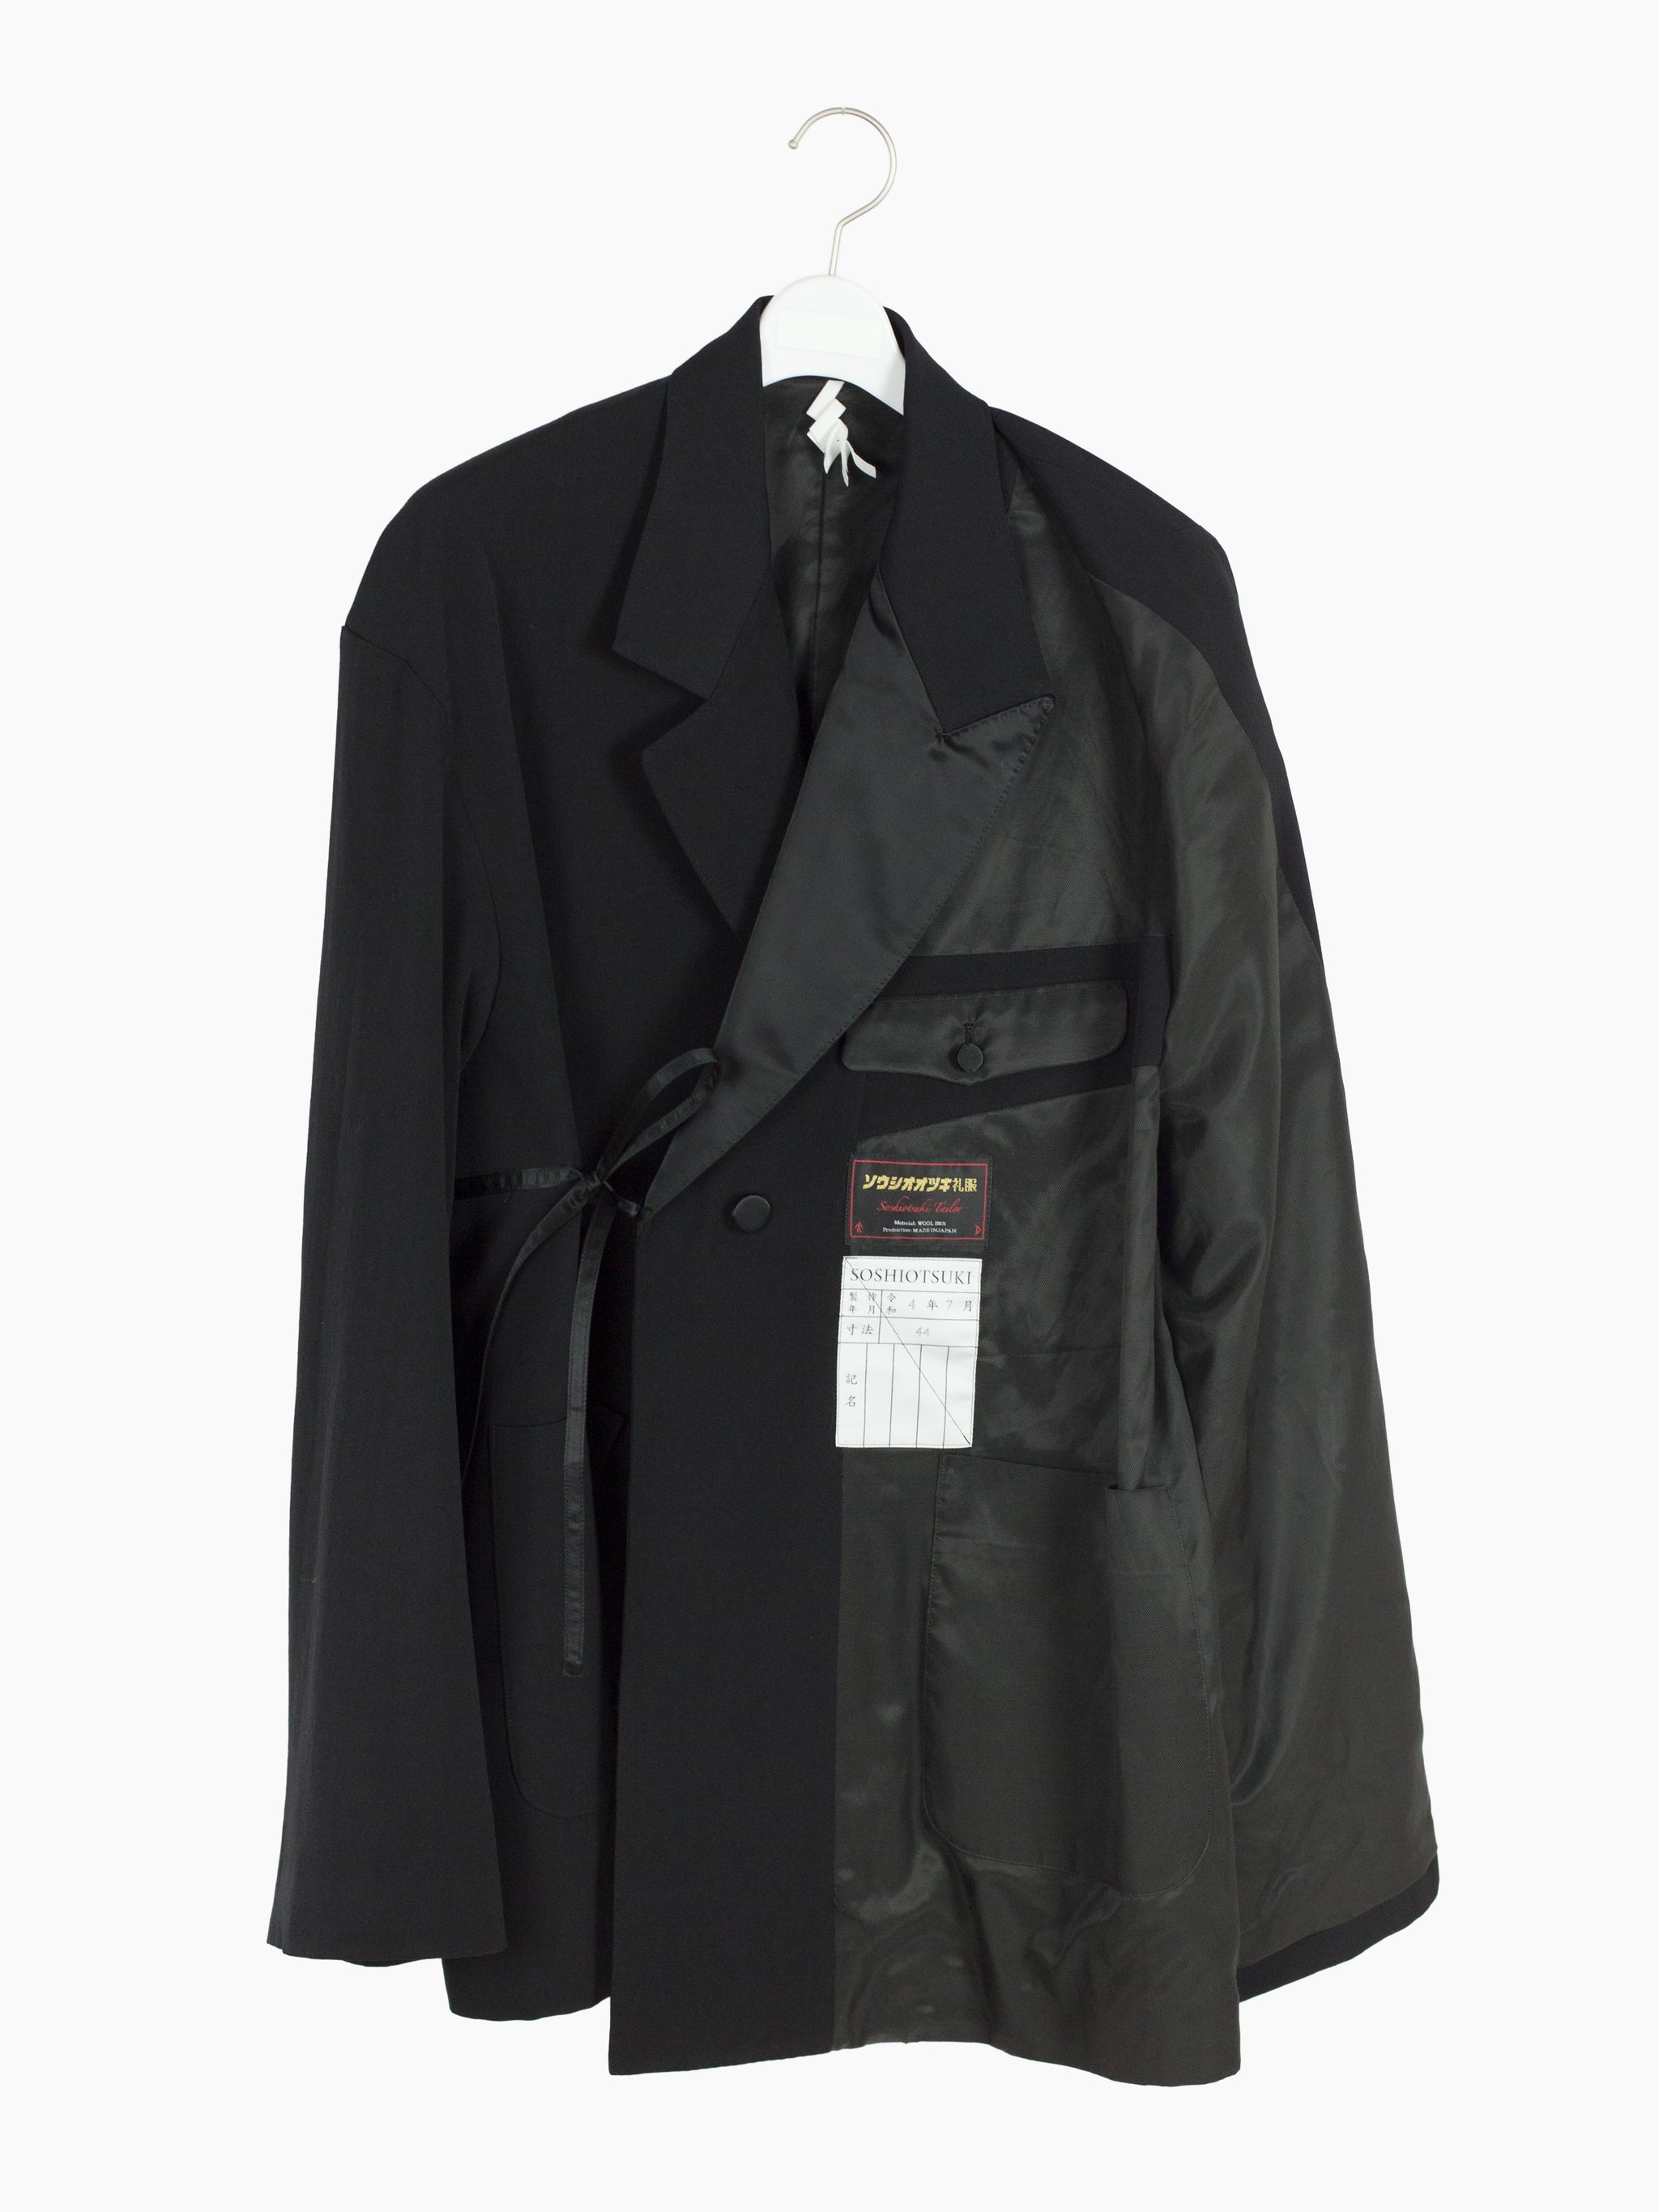 17,150円SOSHIOTSUKI MilitaryDouble Jacket